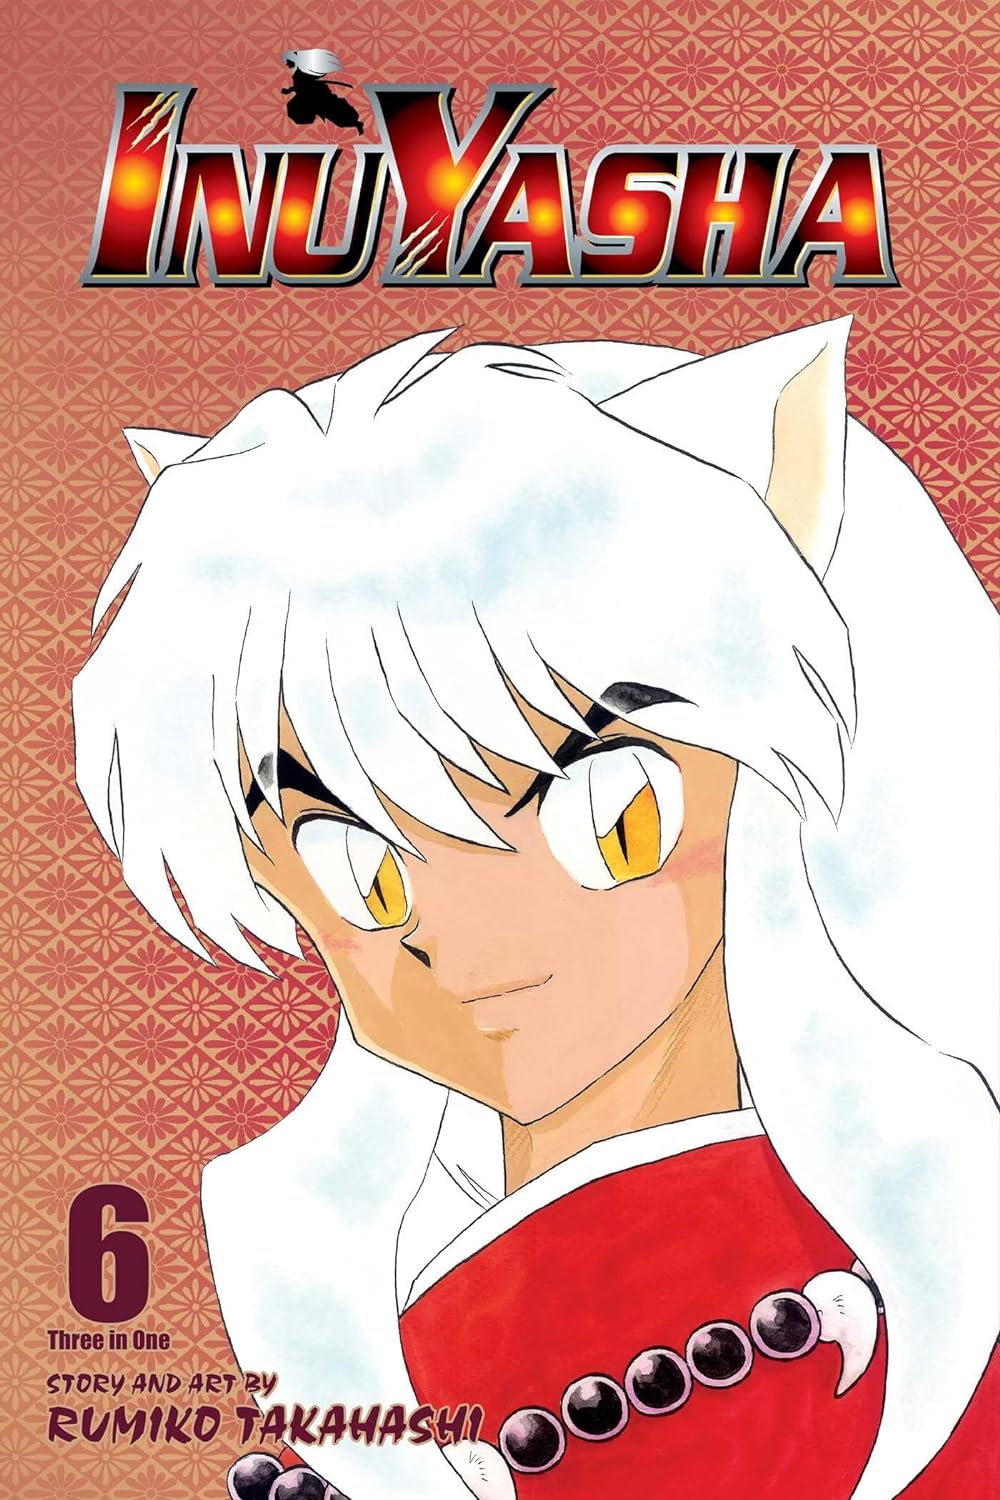 Rumiko Takahashi: InuYasha, Vol. 6 (2003, VIZ Media)